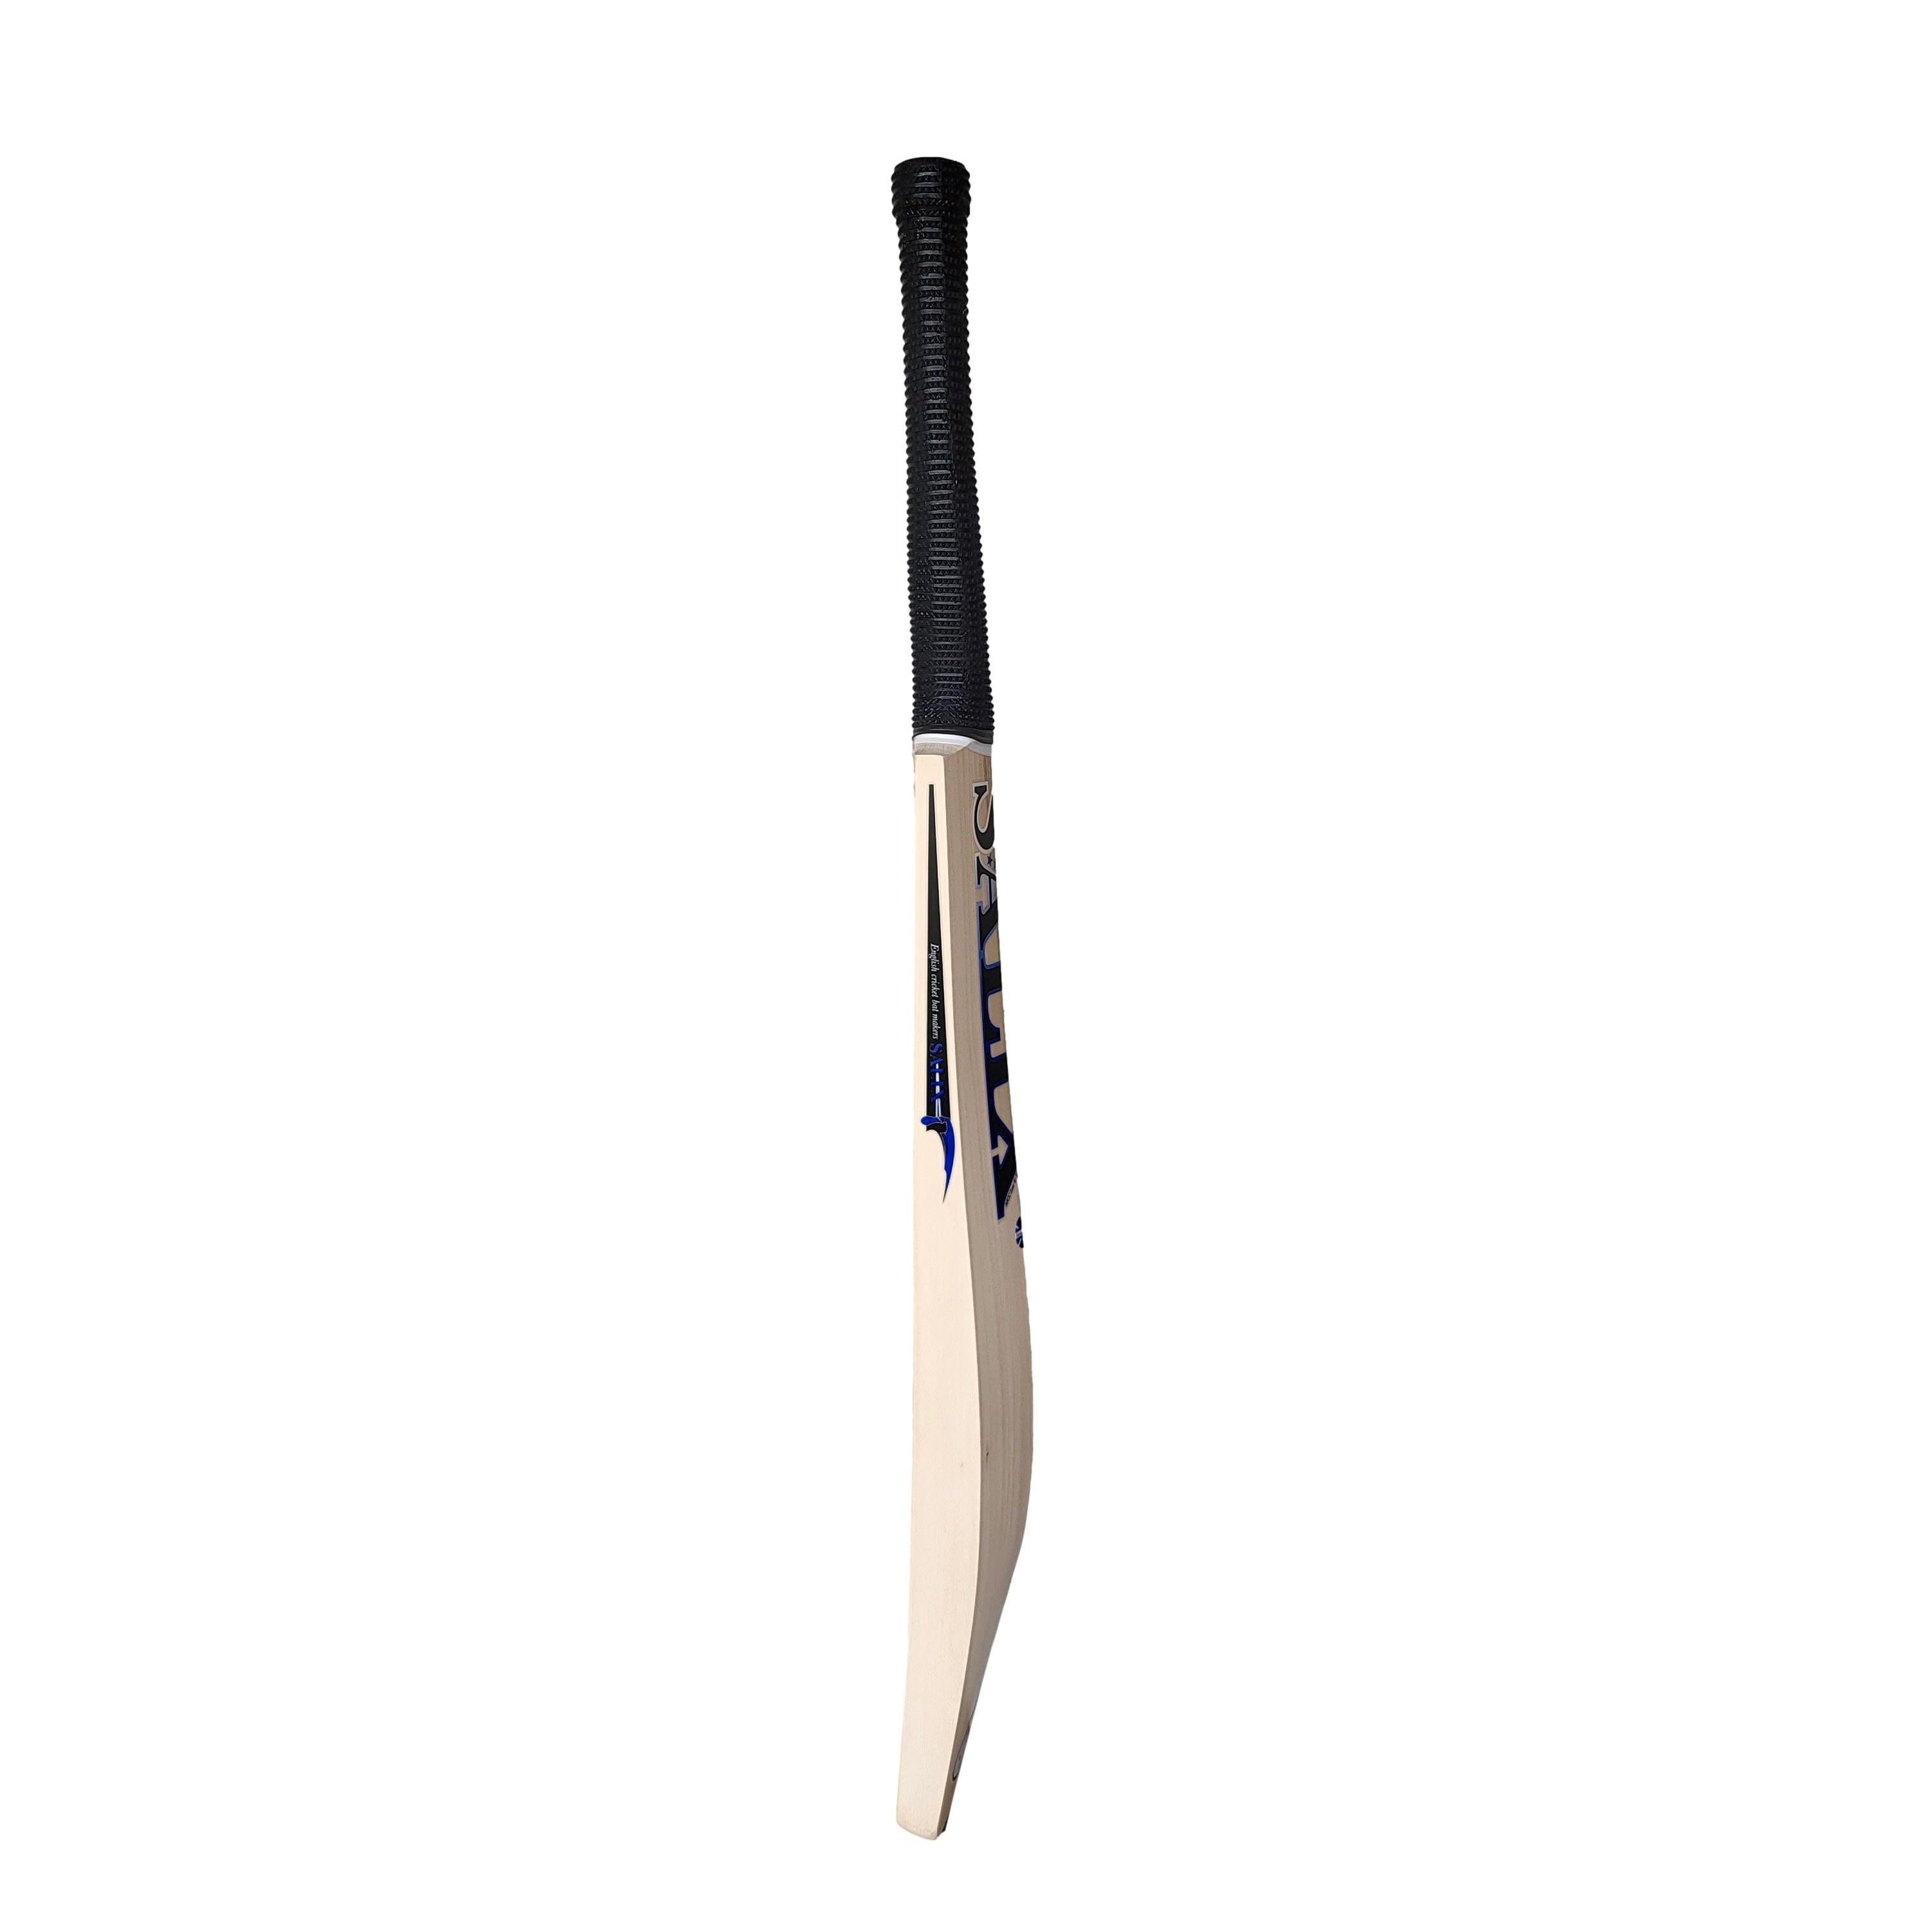 Salix AJK Performance Cricket Bat